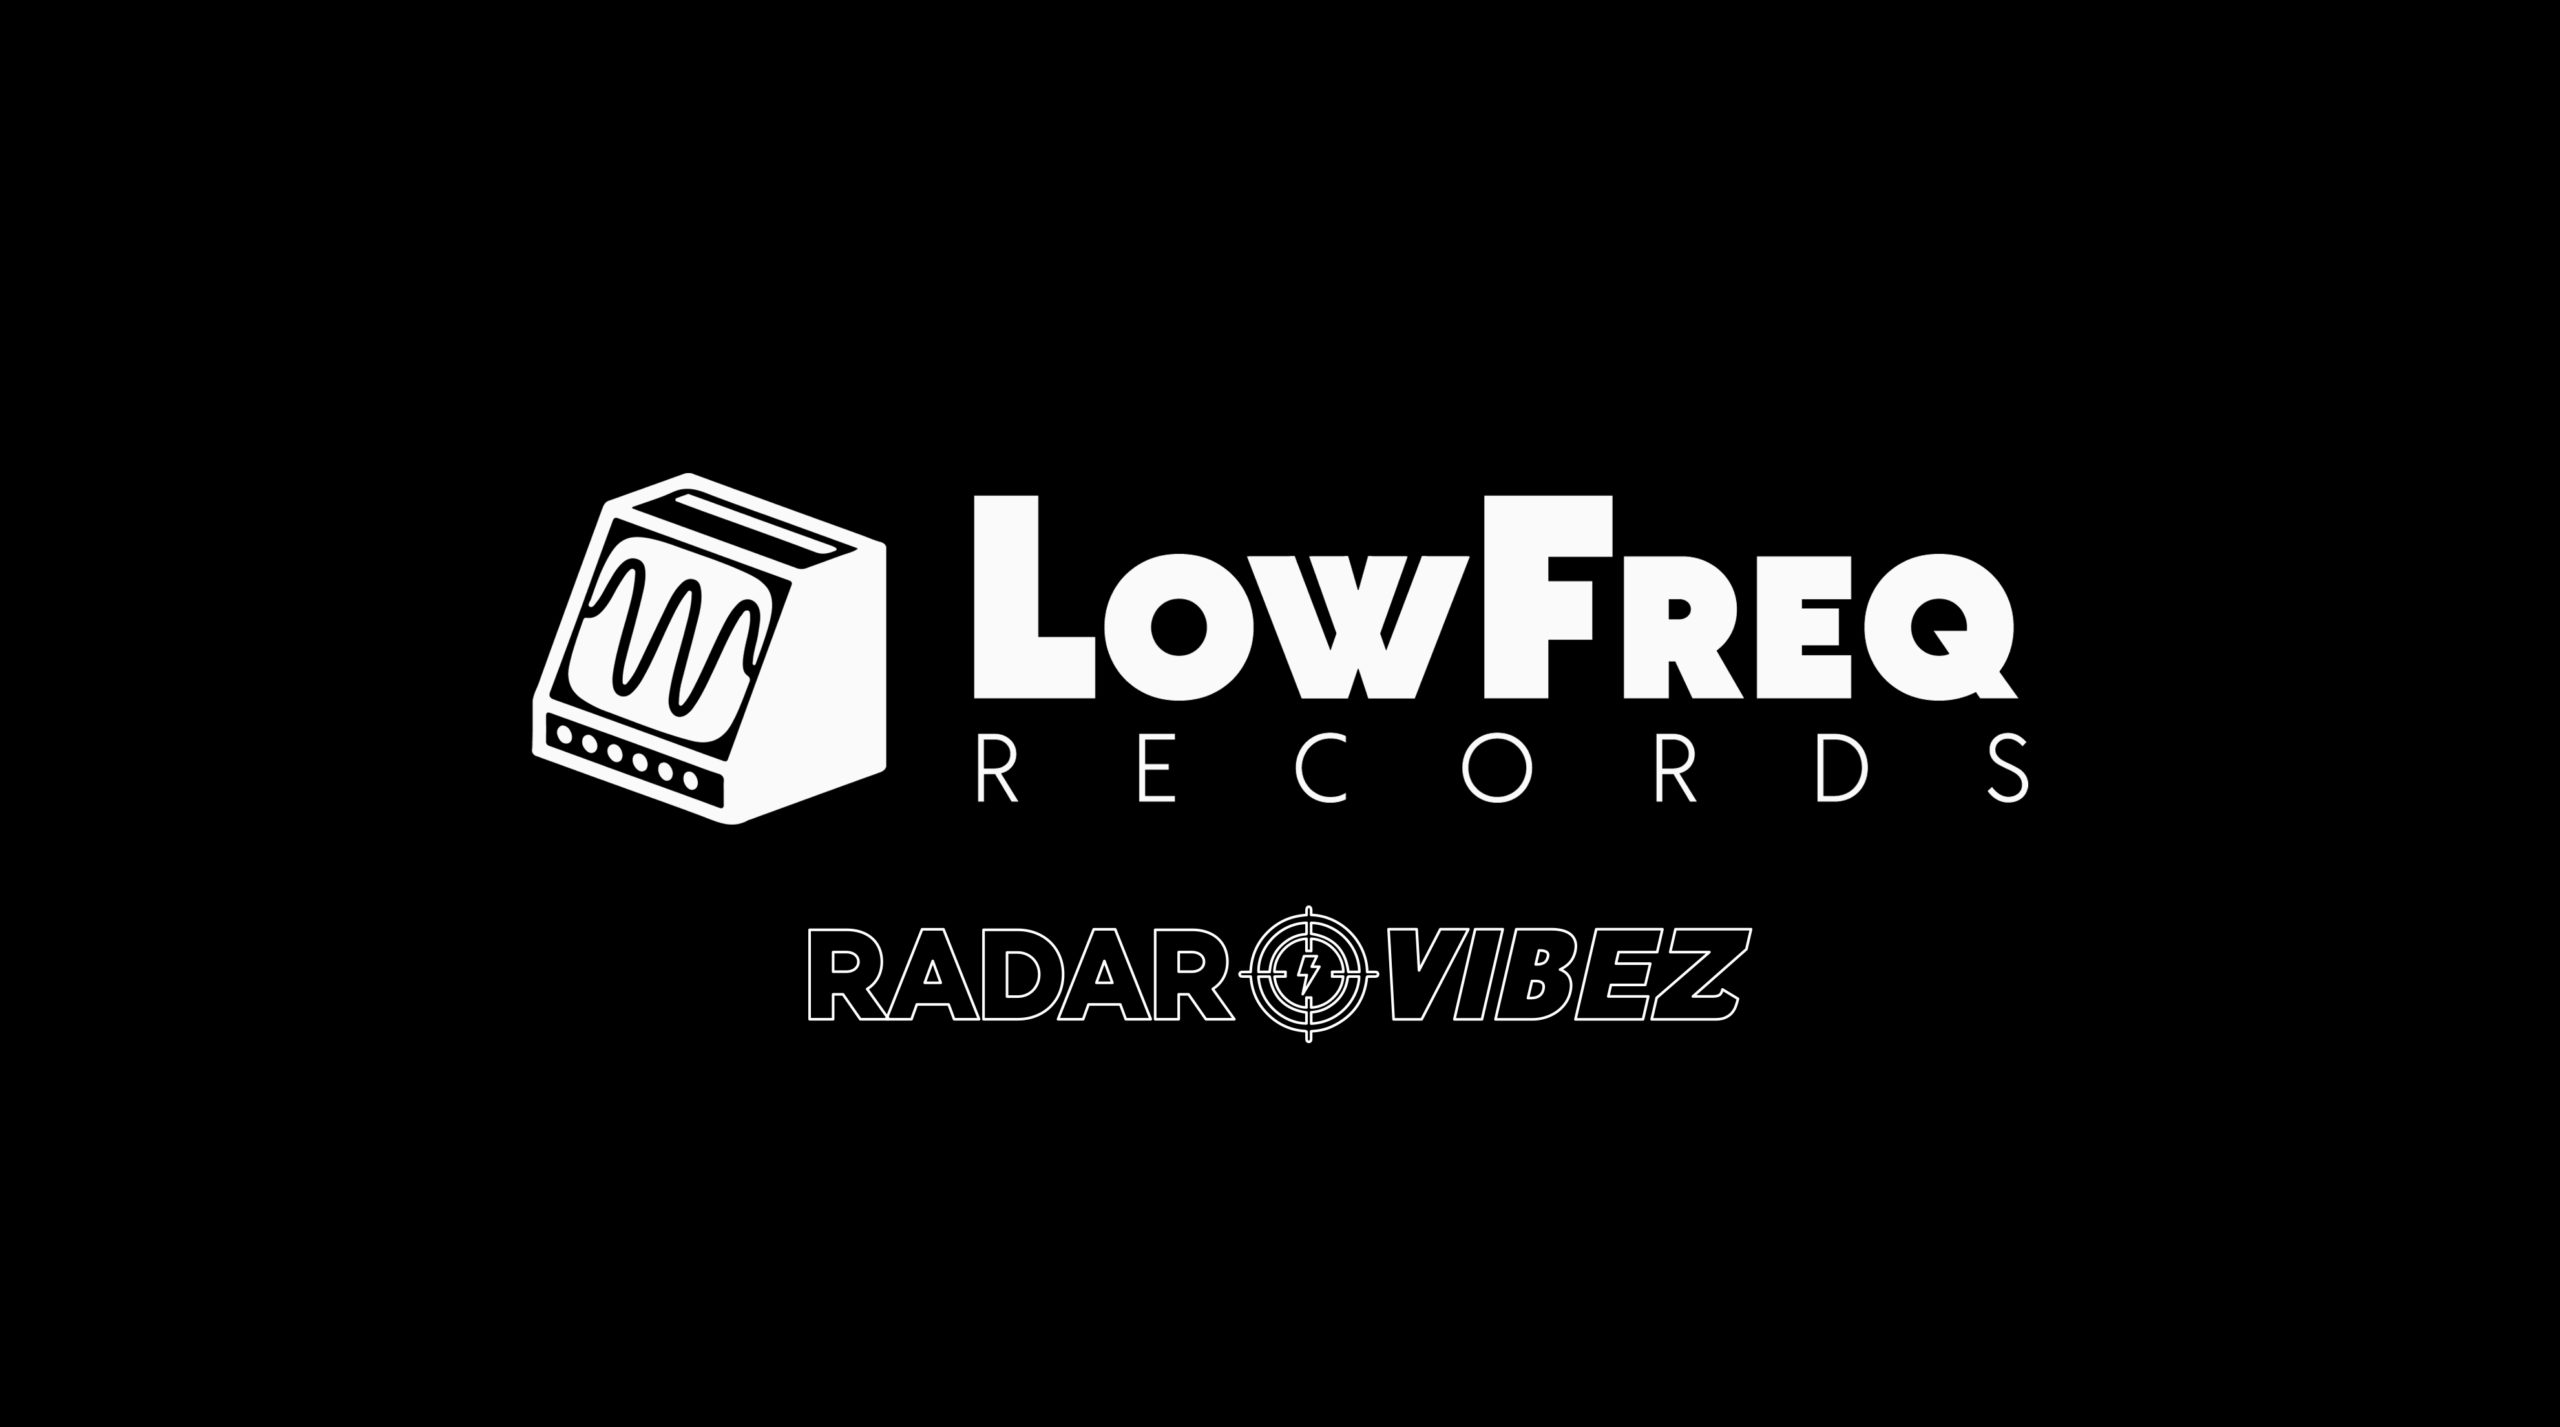 radar vibez gravadora entrevista low freq records scaled